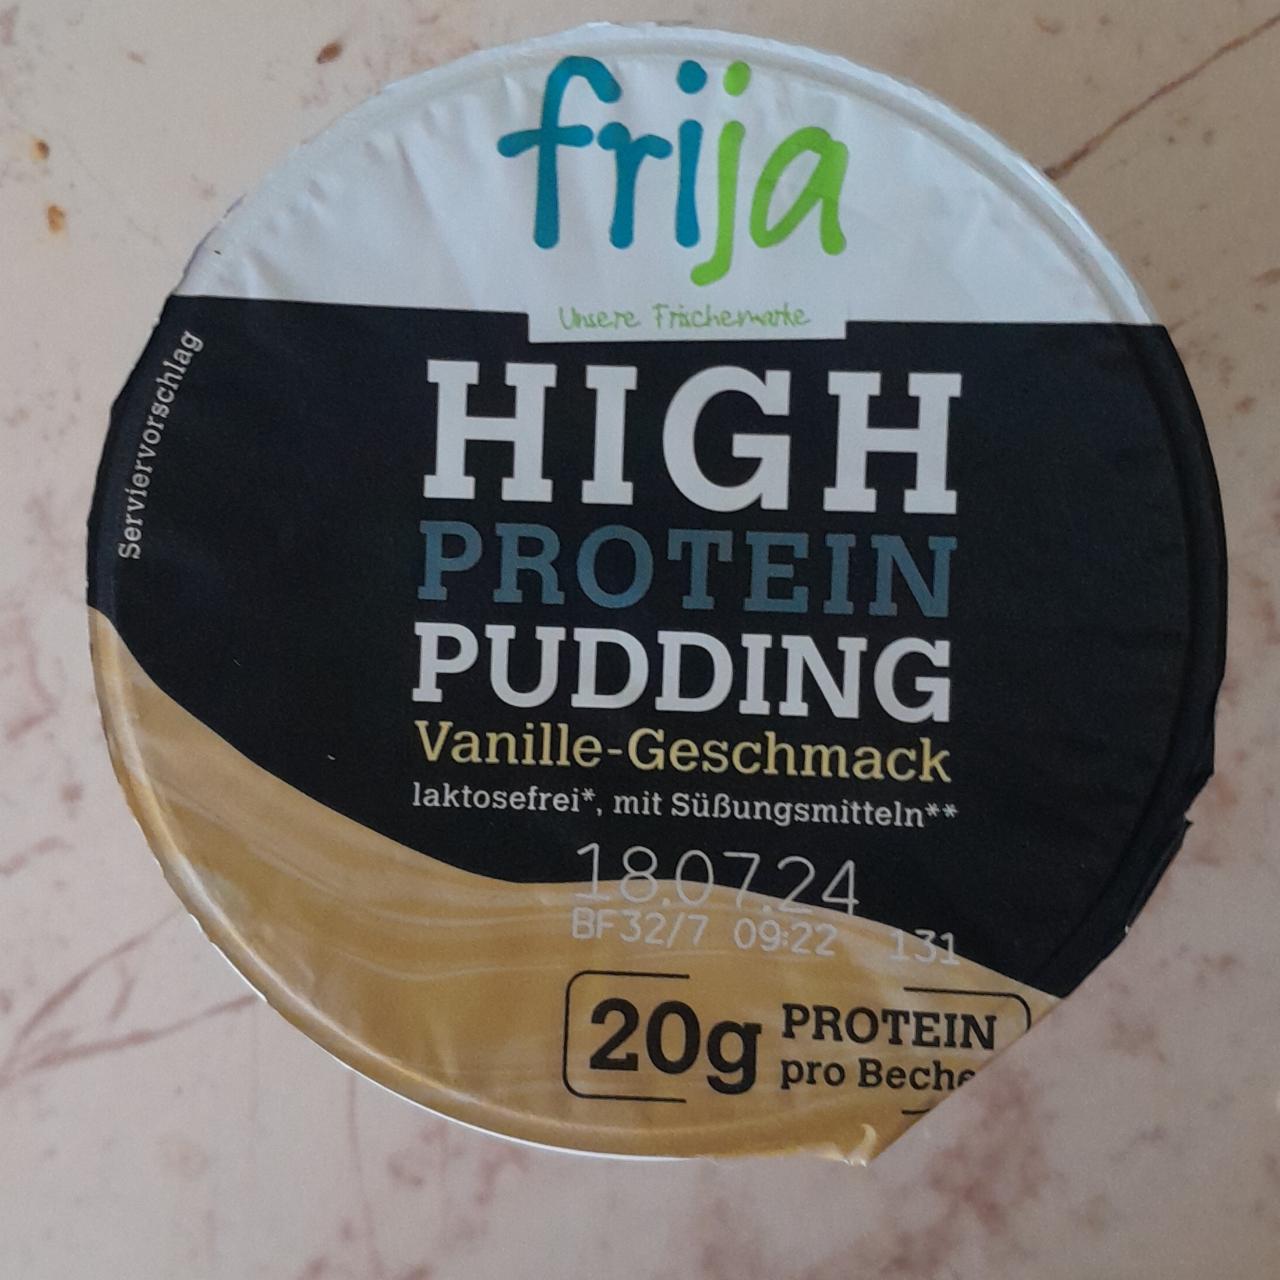 Fotografie - High protein pudding vanille geschmack Frija